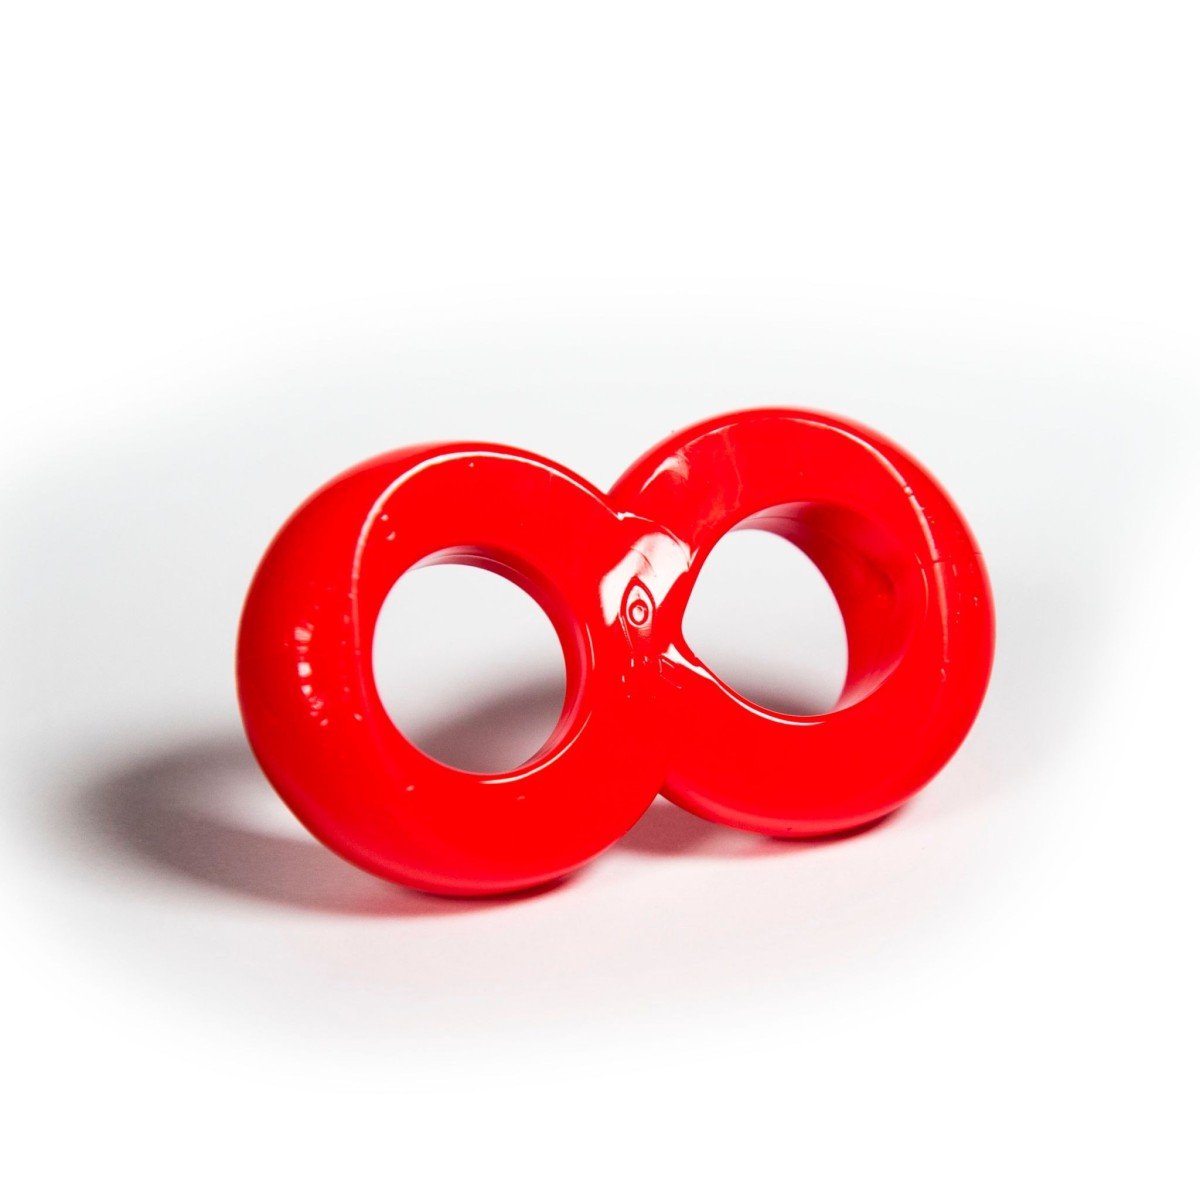 Erekční kroužek Zizi Cosmic Ring červený, elastický erekční kroužek na penis a varlata